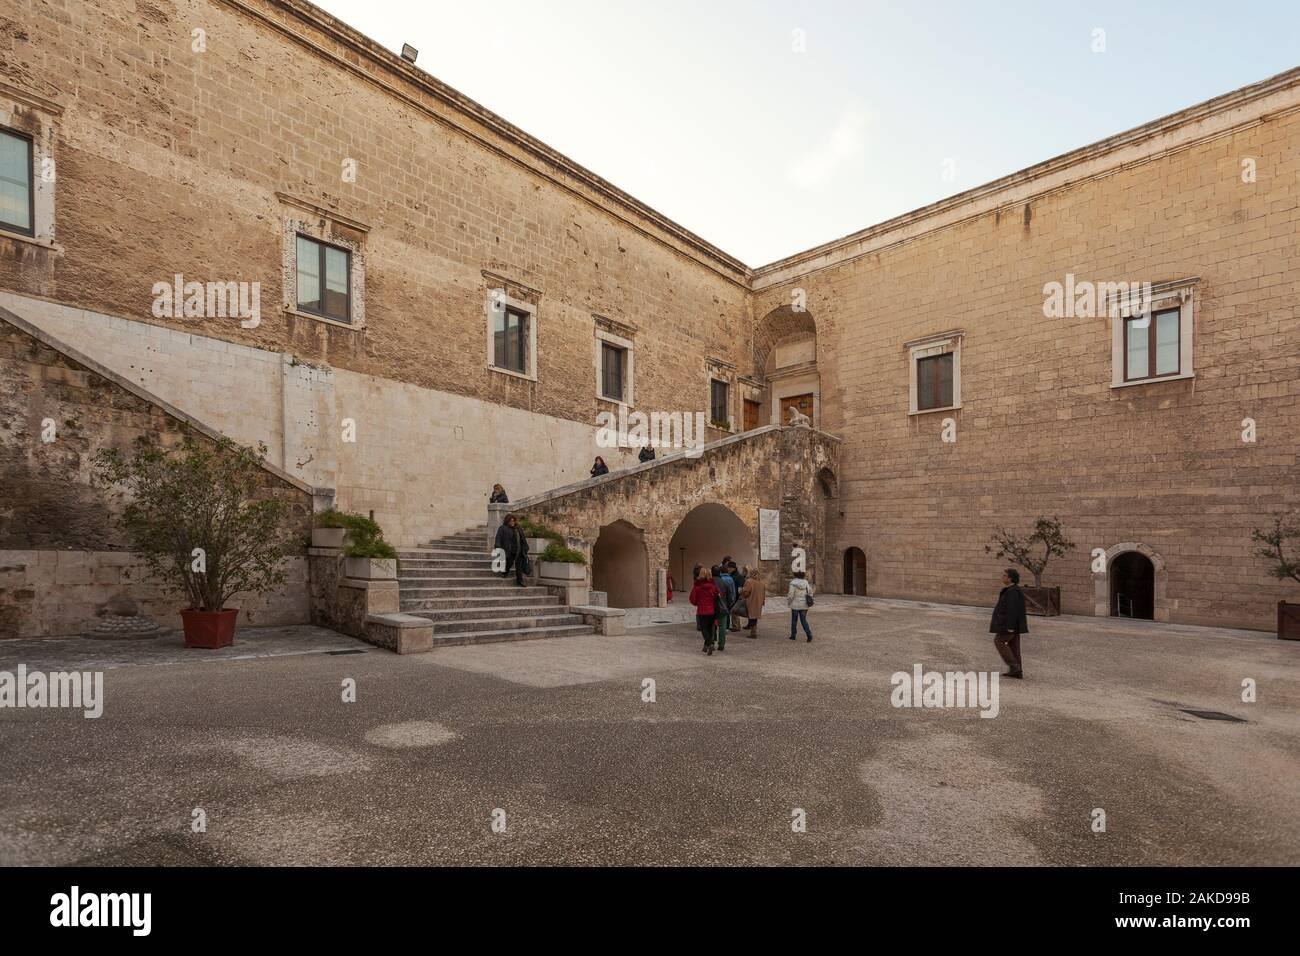 The court of the Swabian Castle or Castello Svevo in Bari, Puglia, Italy Stock Photo